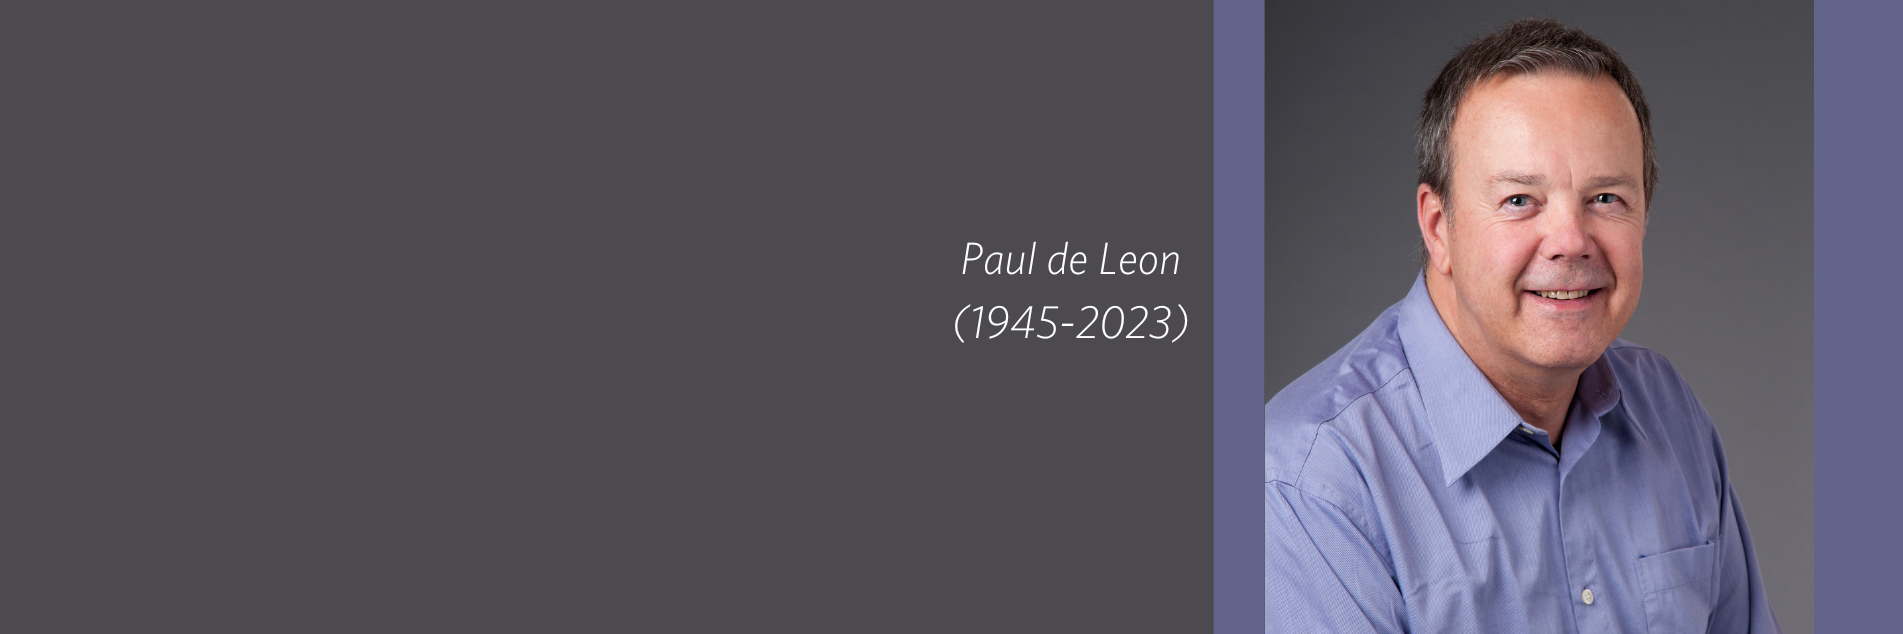 Paul de Leon